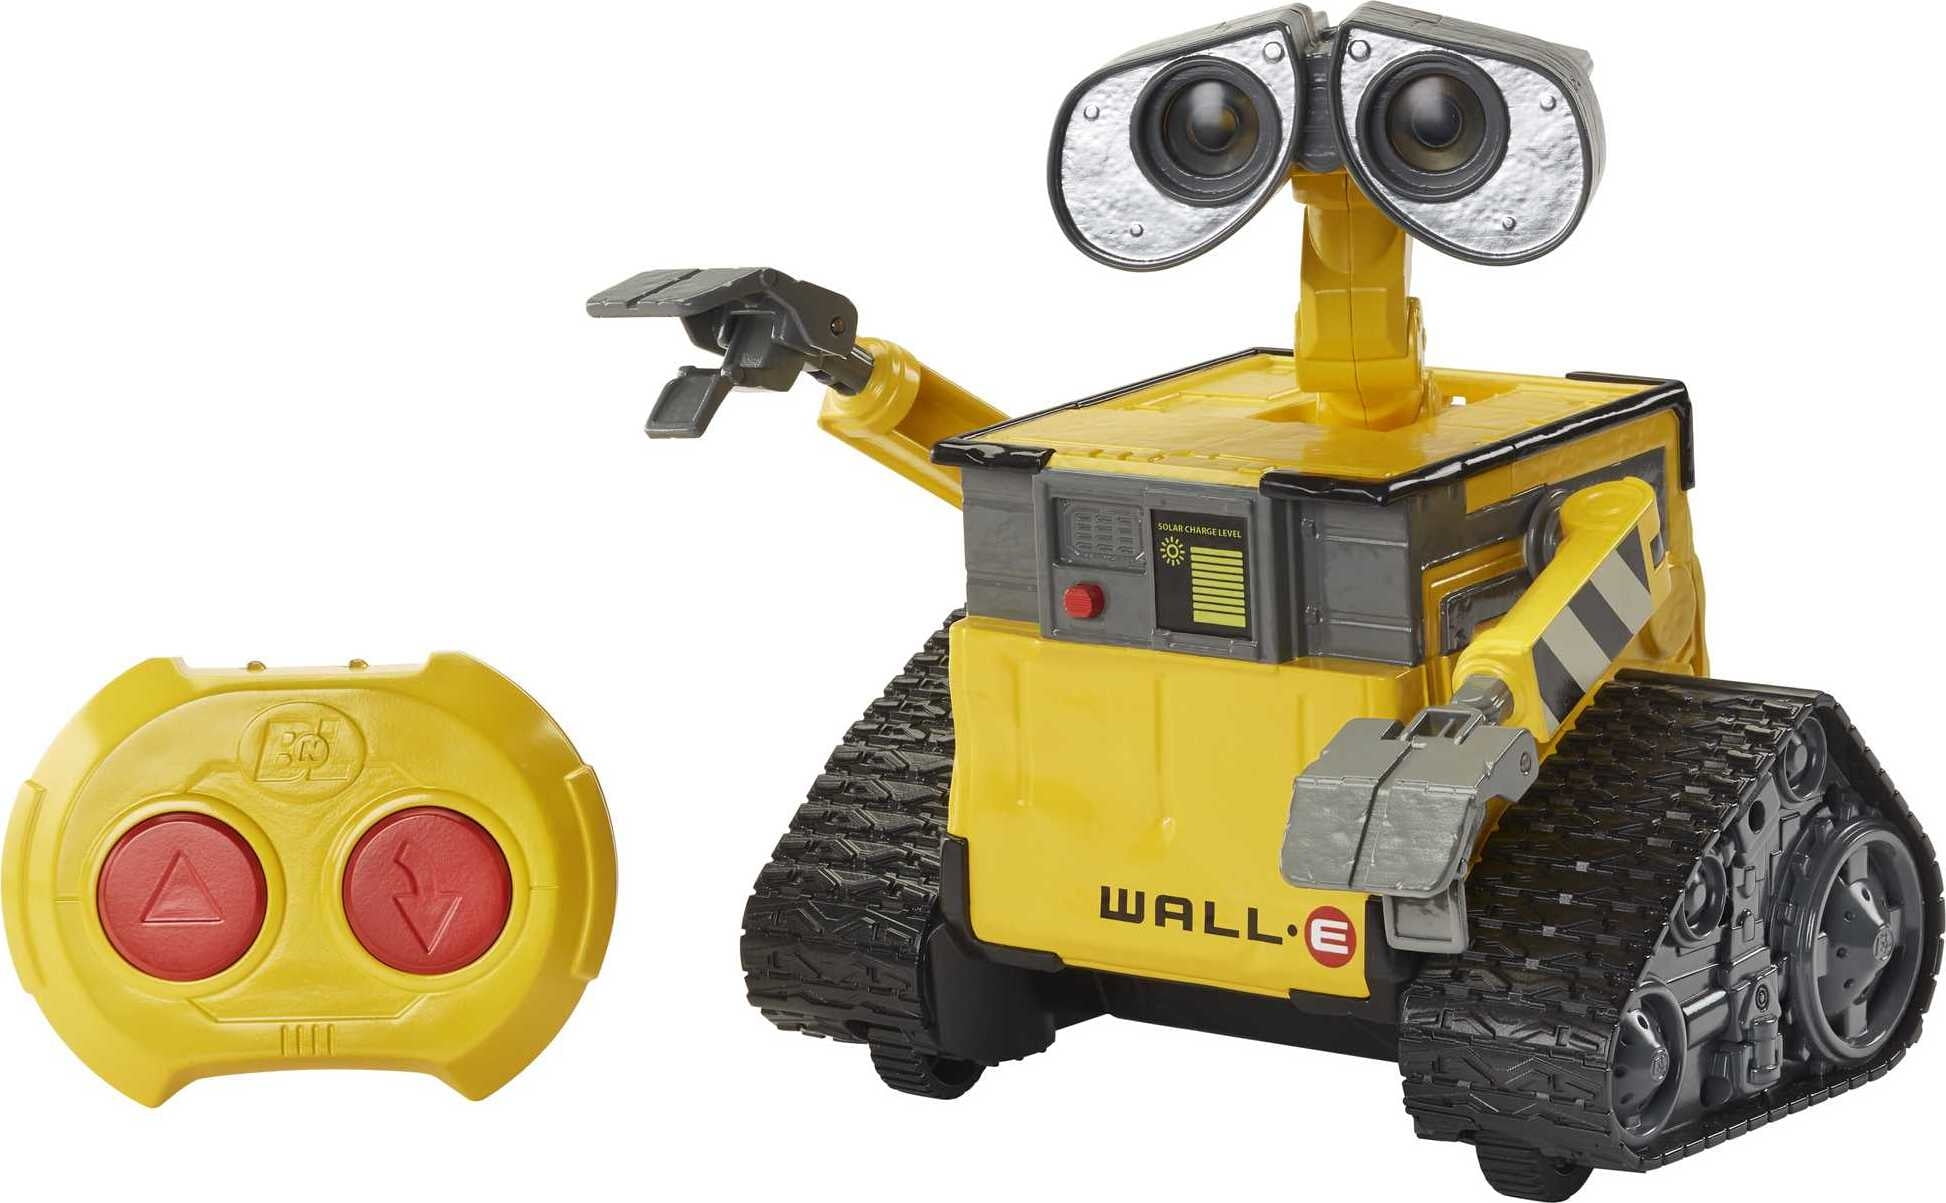 Hãy chiêm ngưỡng vẻ đẹp và sức mạnh của điều khiển từ xa robot WALL-E - một sản phẩm đặc biệt của Disney và Pixar. Trong mọi hình dạng và kích cỡ, robot WALL-E sẽ khiến bạn ngạc nhiên bởi những kĩ năng đặc biệt của nó và sự tiện nghi cho người dùng.